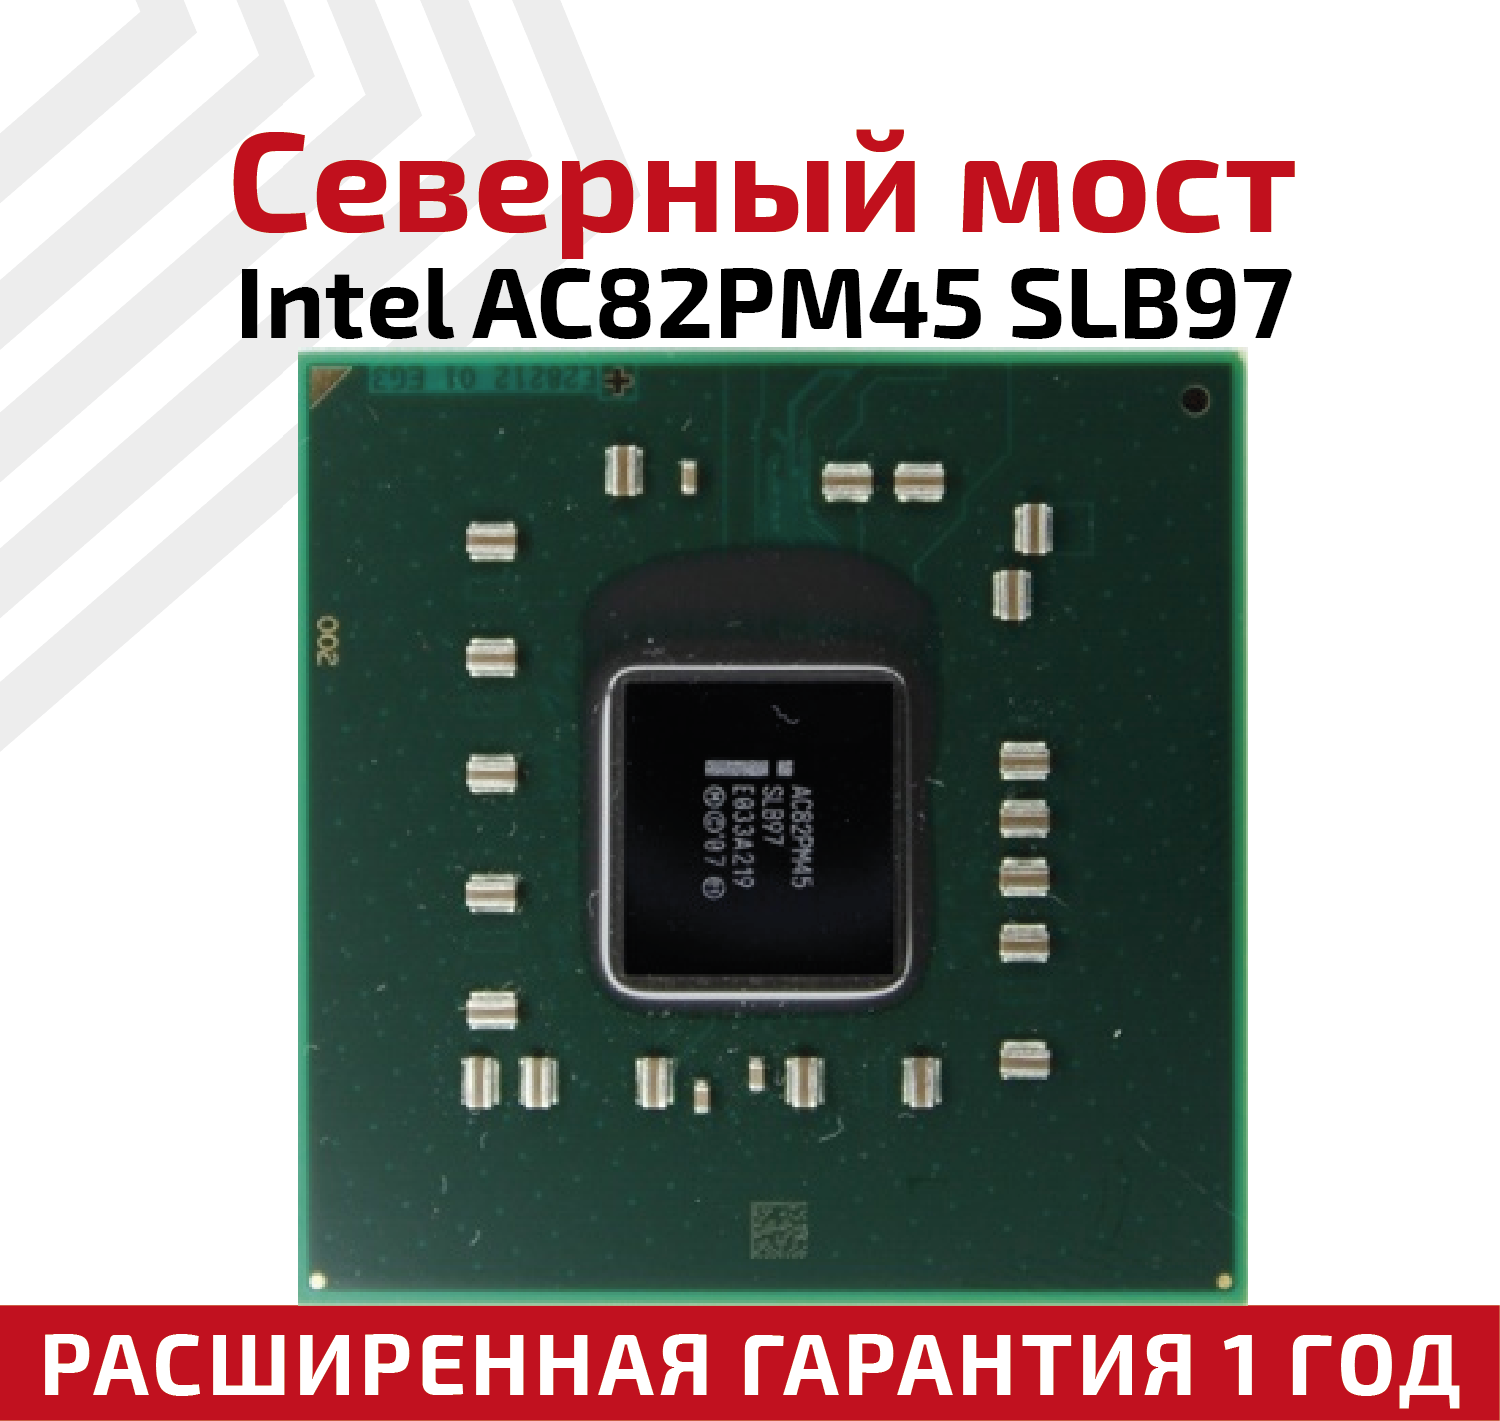 Северный мост Intel AC82PM45 SLB97